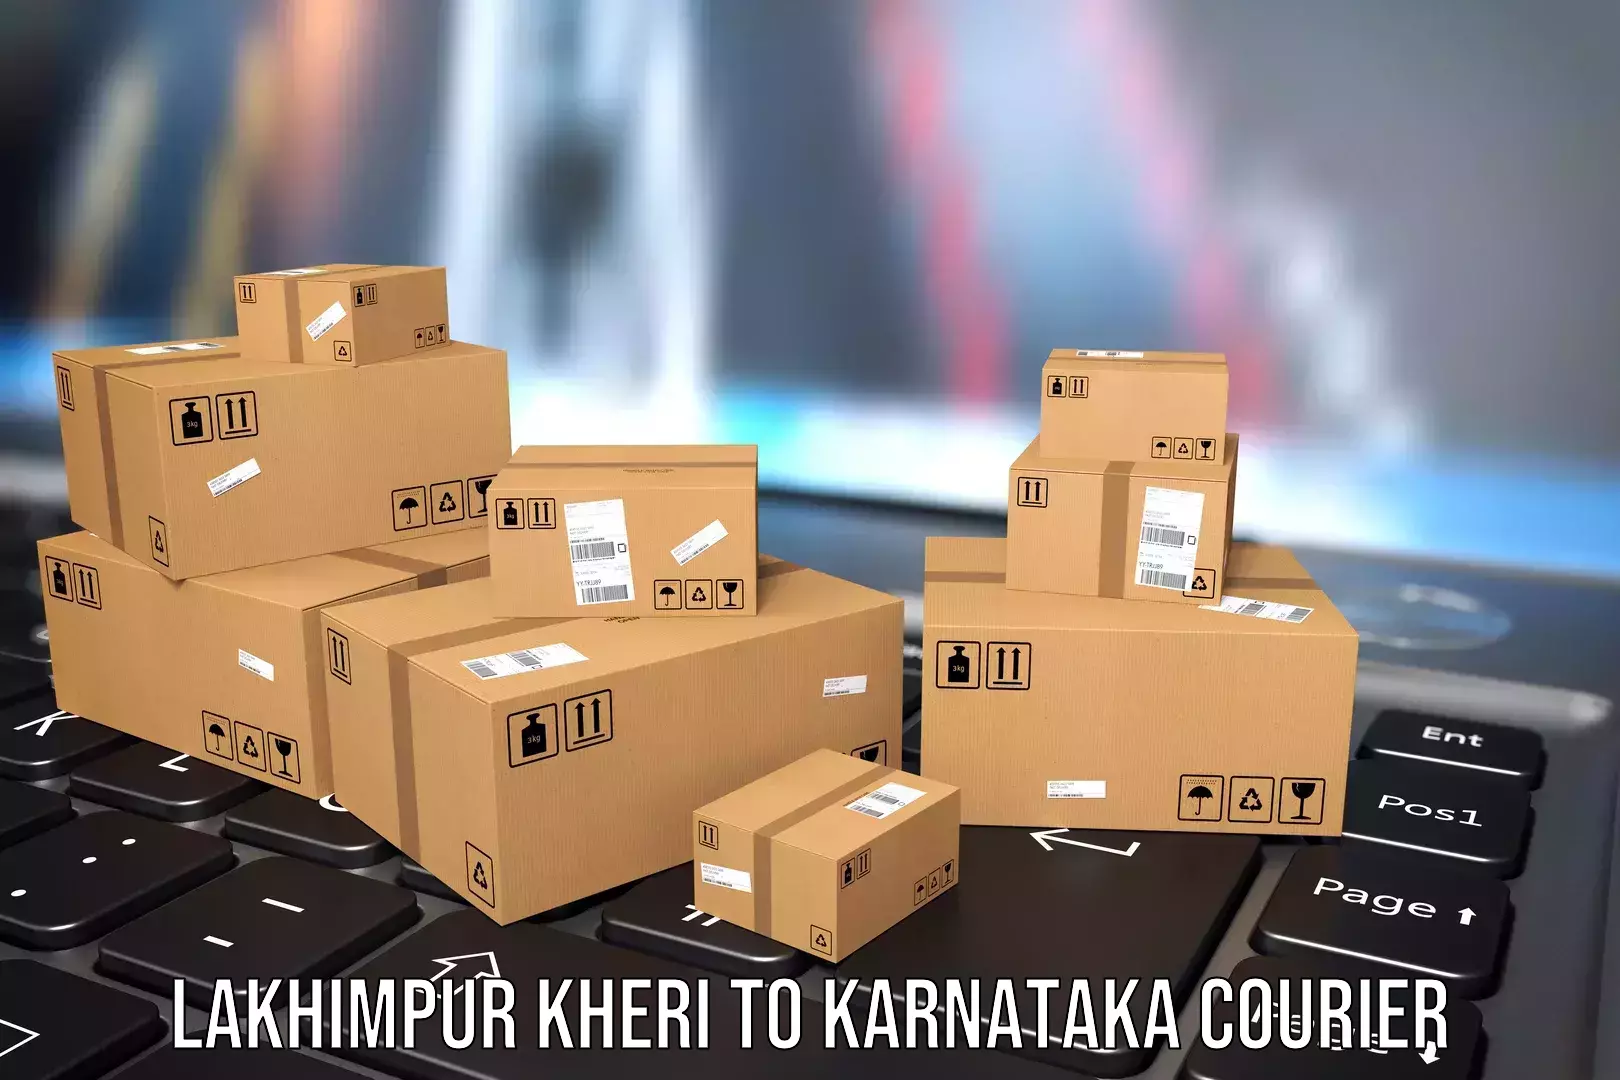 Baggage transport technology Lakhimpur Kheri to Karnataka